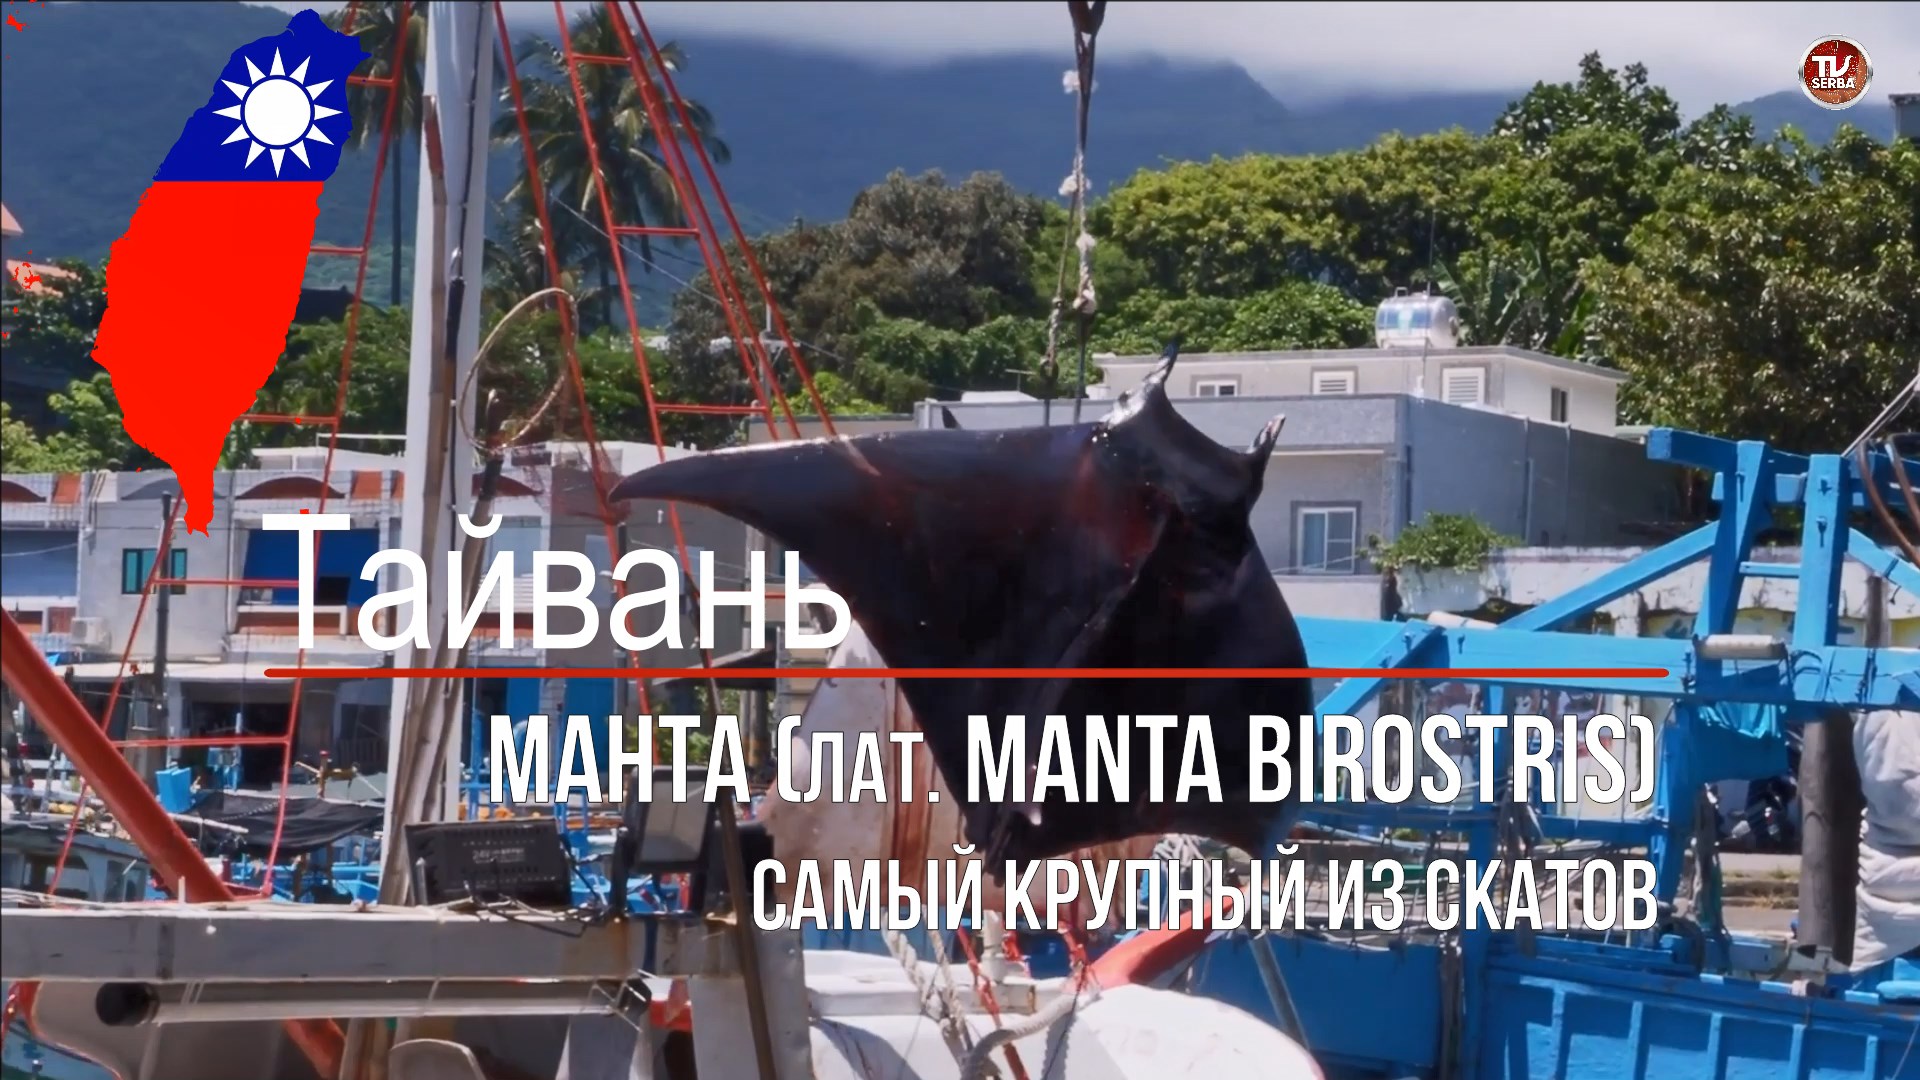 Манта (лат. Manta birostris) — самый крупный из скатов. Рецепт приготовления Ската Манта / СербаТВ